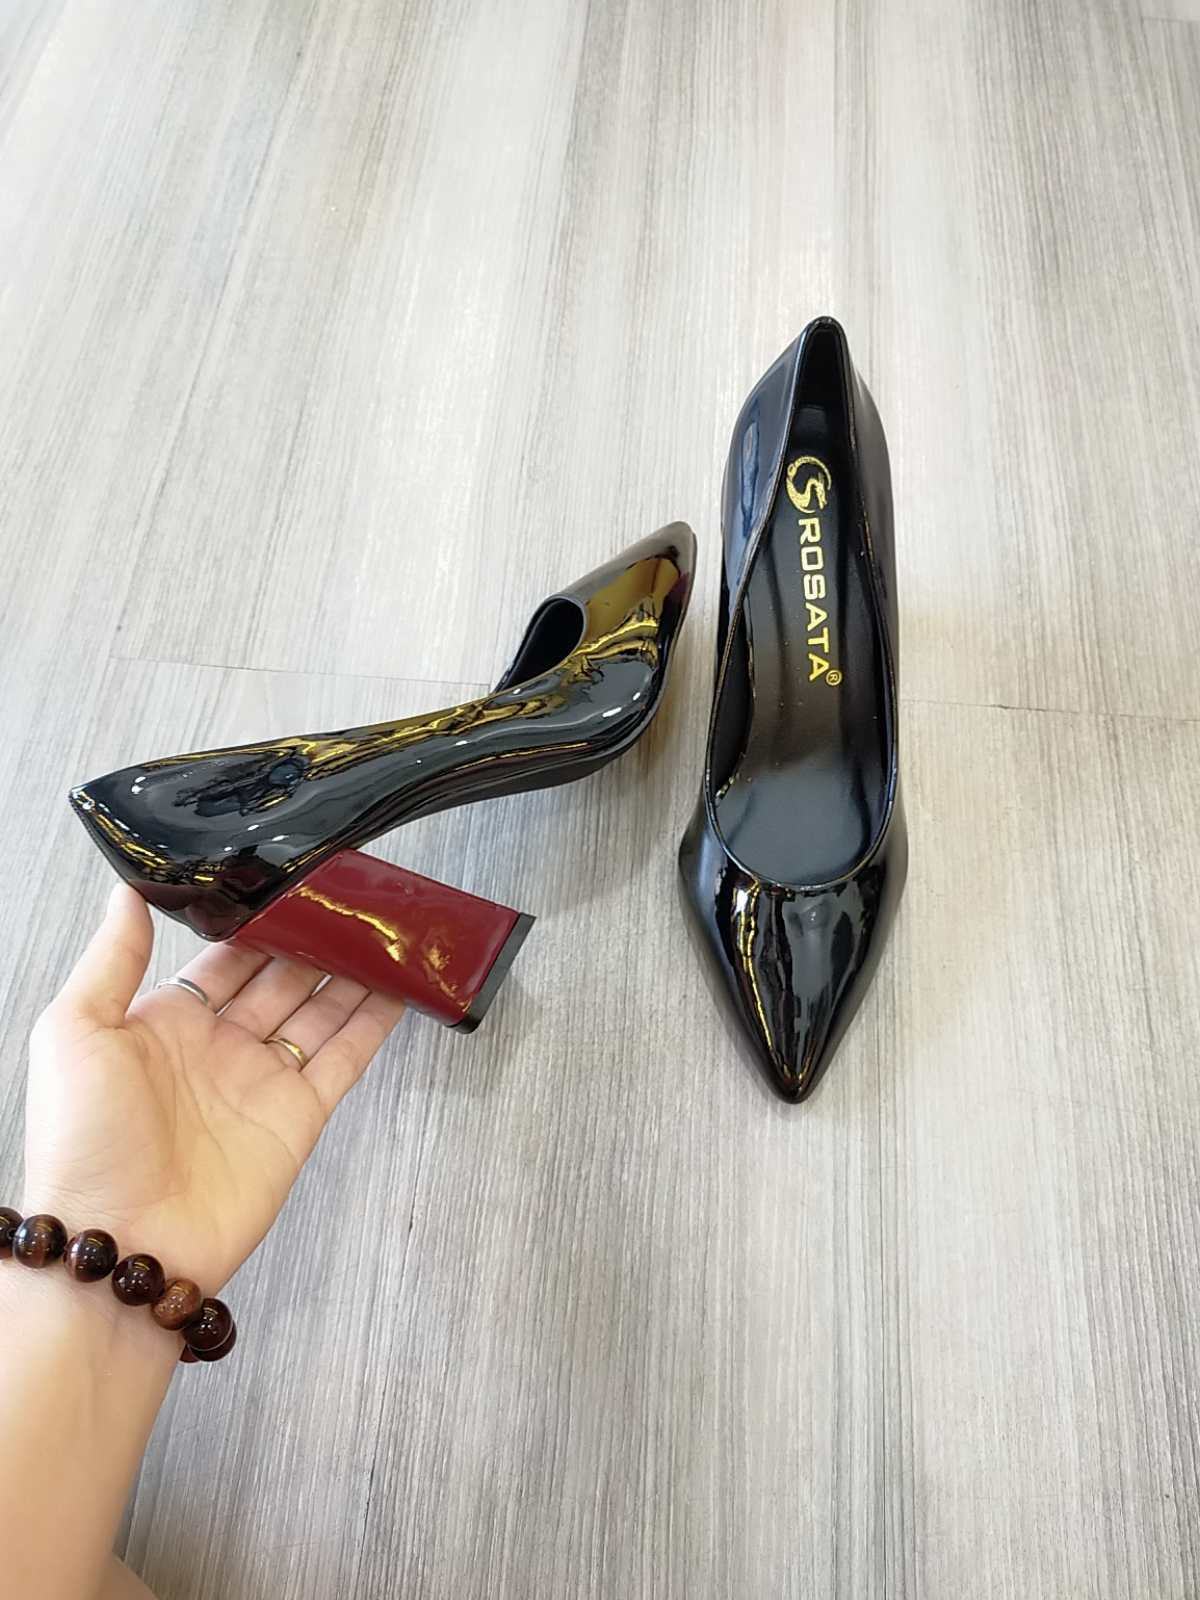 Giày cao gót nữ nghịch màu cao cấp ROSATA RO125 7p gót vuông - HÀNG VIỆT NAM - BKSTORE